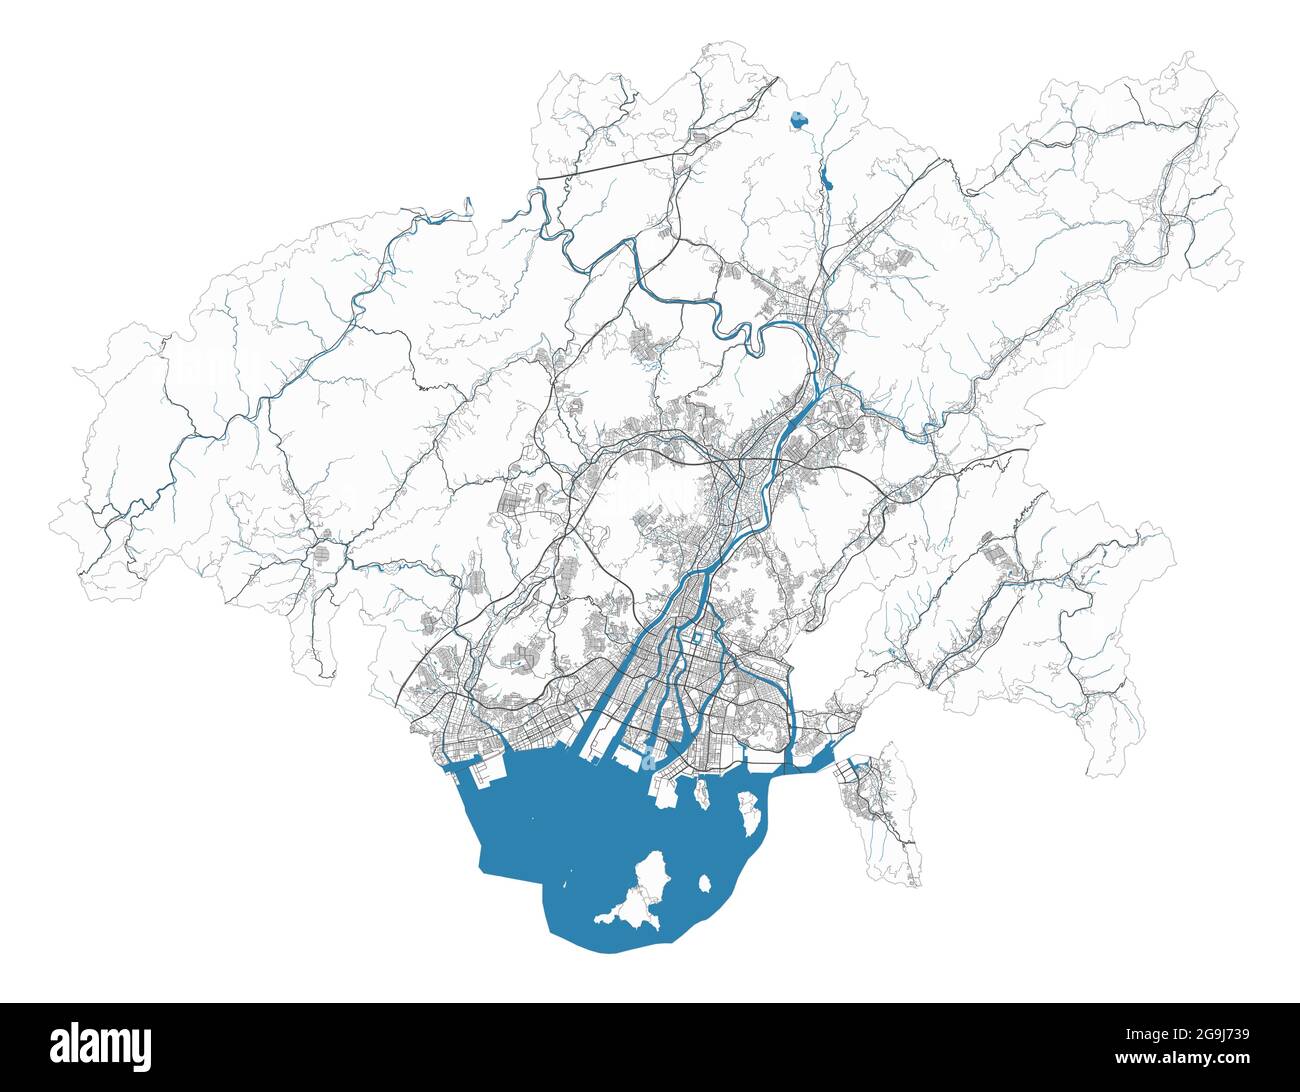 Hiroshima-Karte. Detaillierte Karte des Verwaltungsgebiets der Stadt Hiroshima. Stadtbild-Panorama. Lizenzfreie Vektorgrafik. Übersichtskarte mit Autobahnen, st Stock Vektor